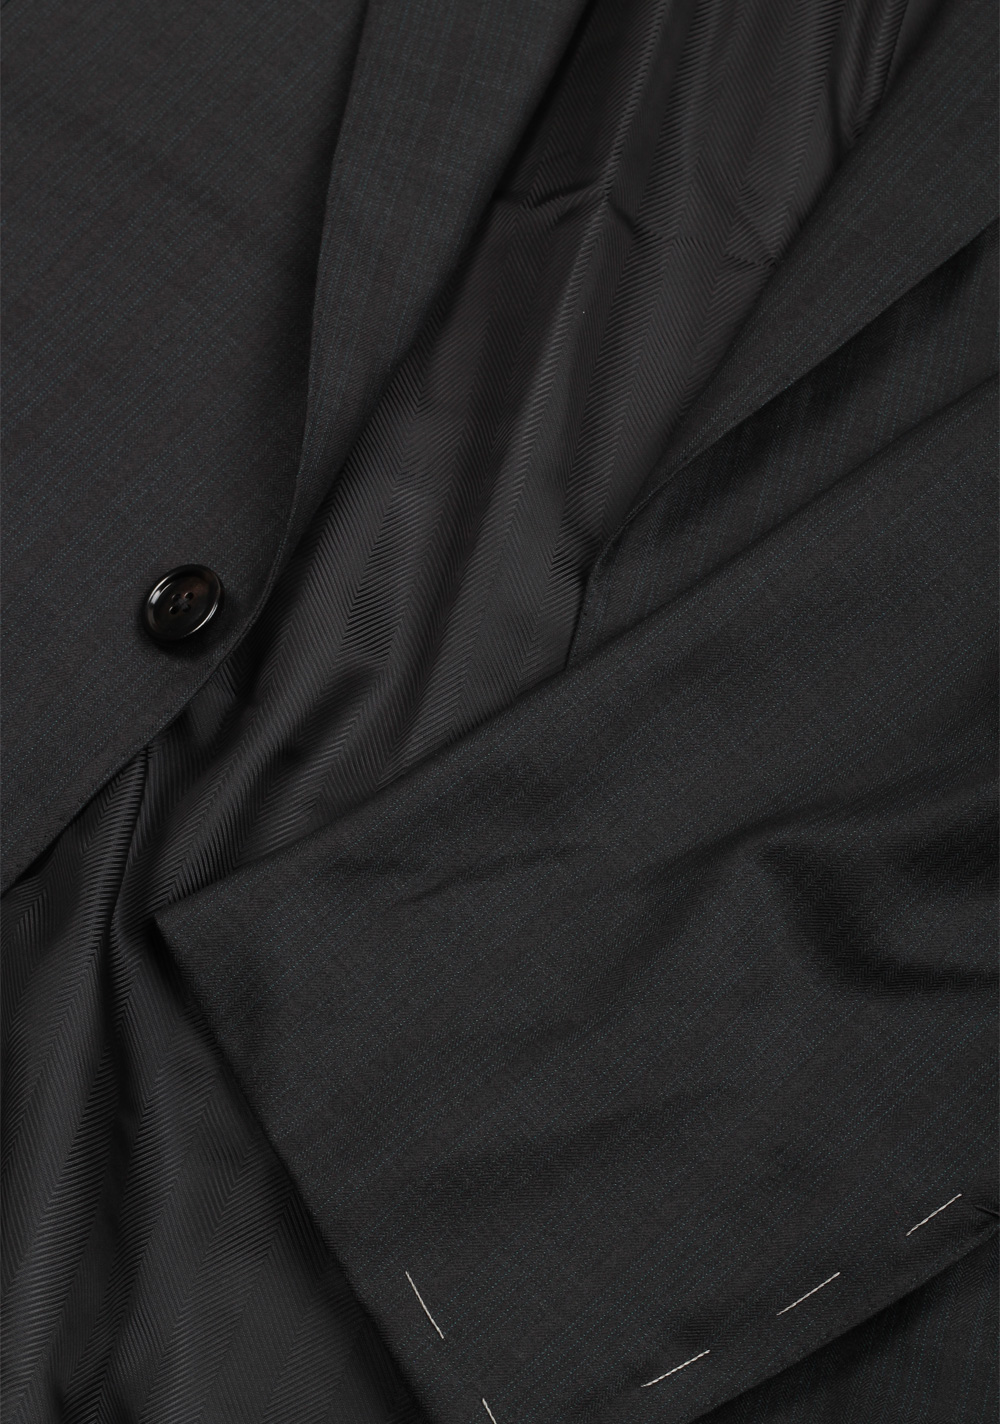 Ermenegildo Zegna Premium Couture Gray Striped Suit Size 54 / 44R U.S. | Costume Limité